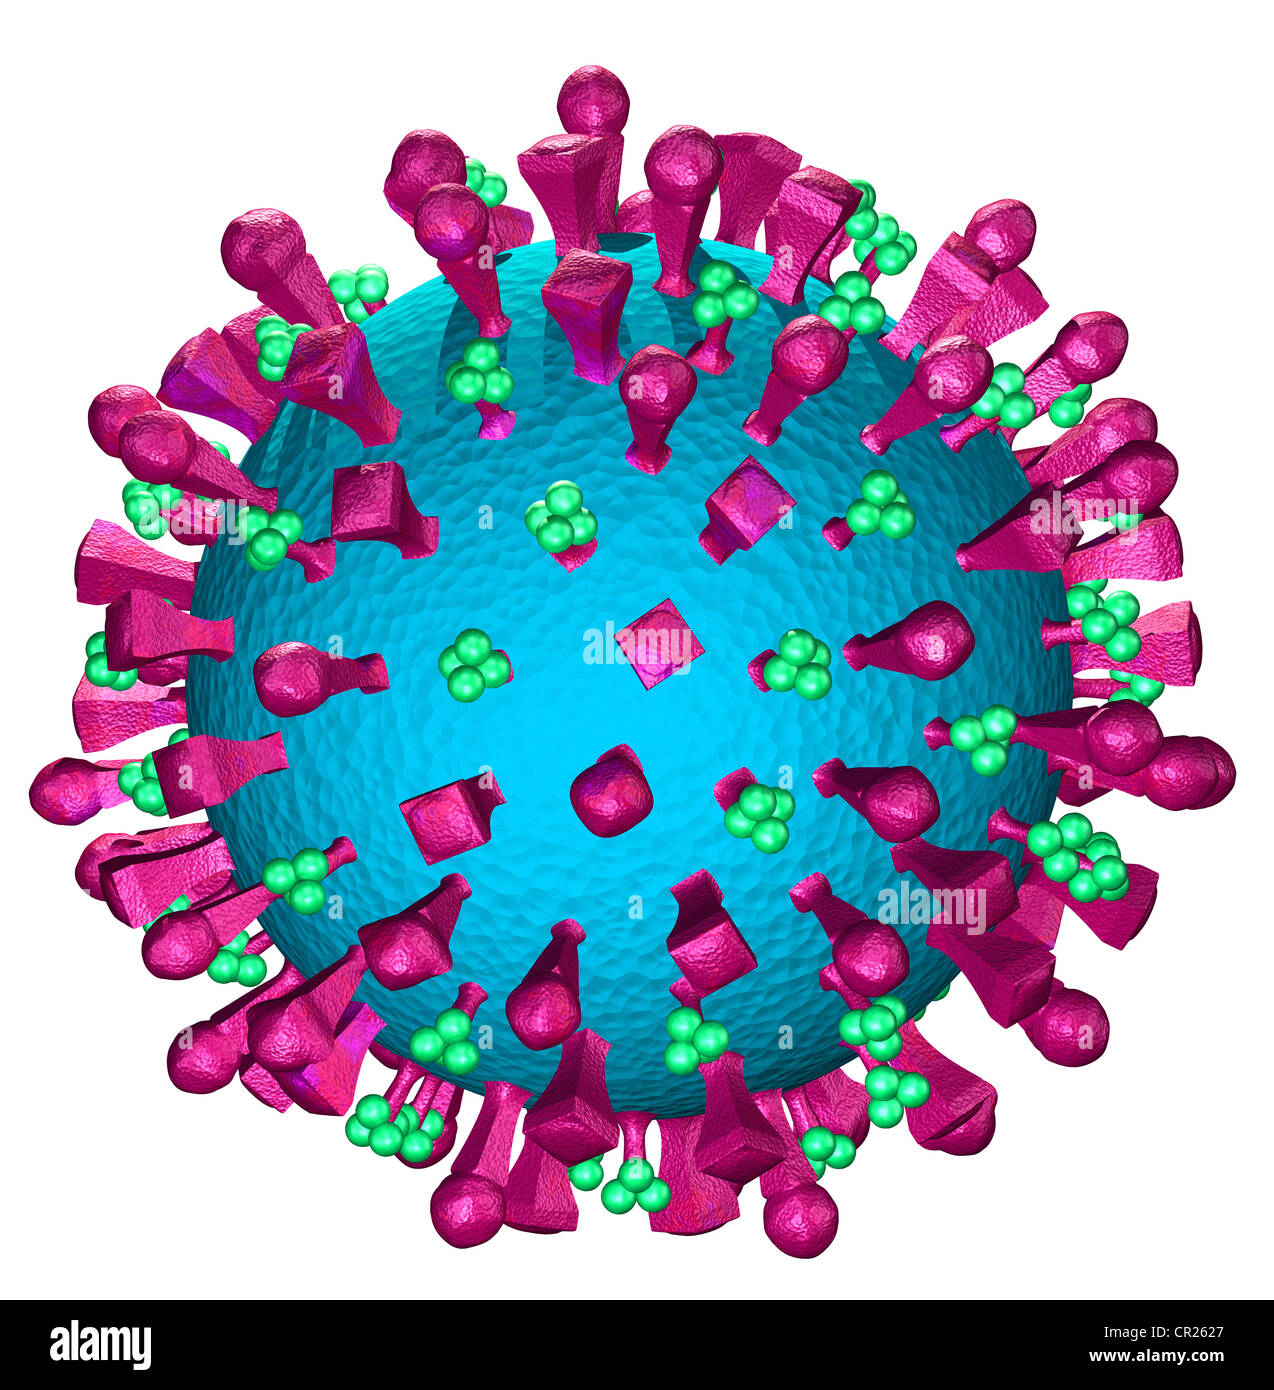 Abbildungen der Struktur eines typischen menschlichen Virus Stockfoto